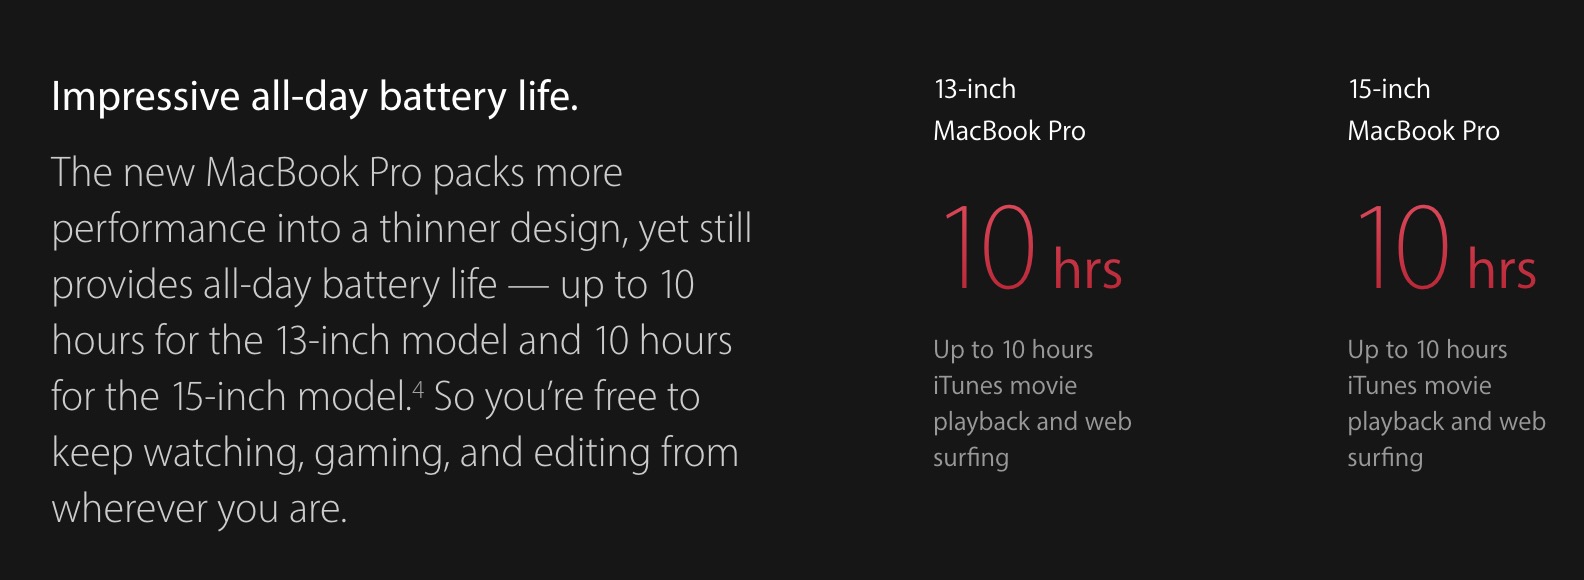 Впечатляющая реклама MacBook, работающая от батареи в течение всего дня